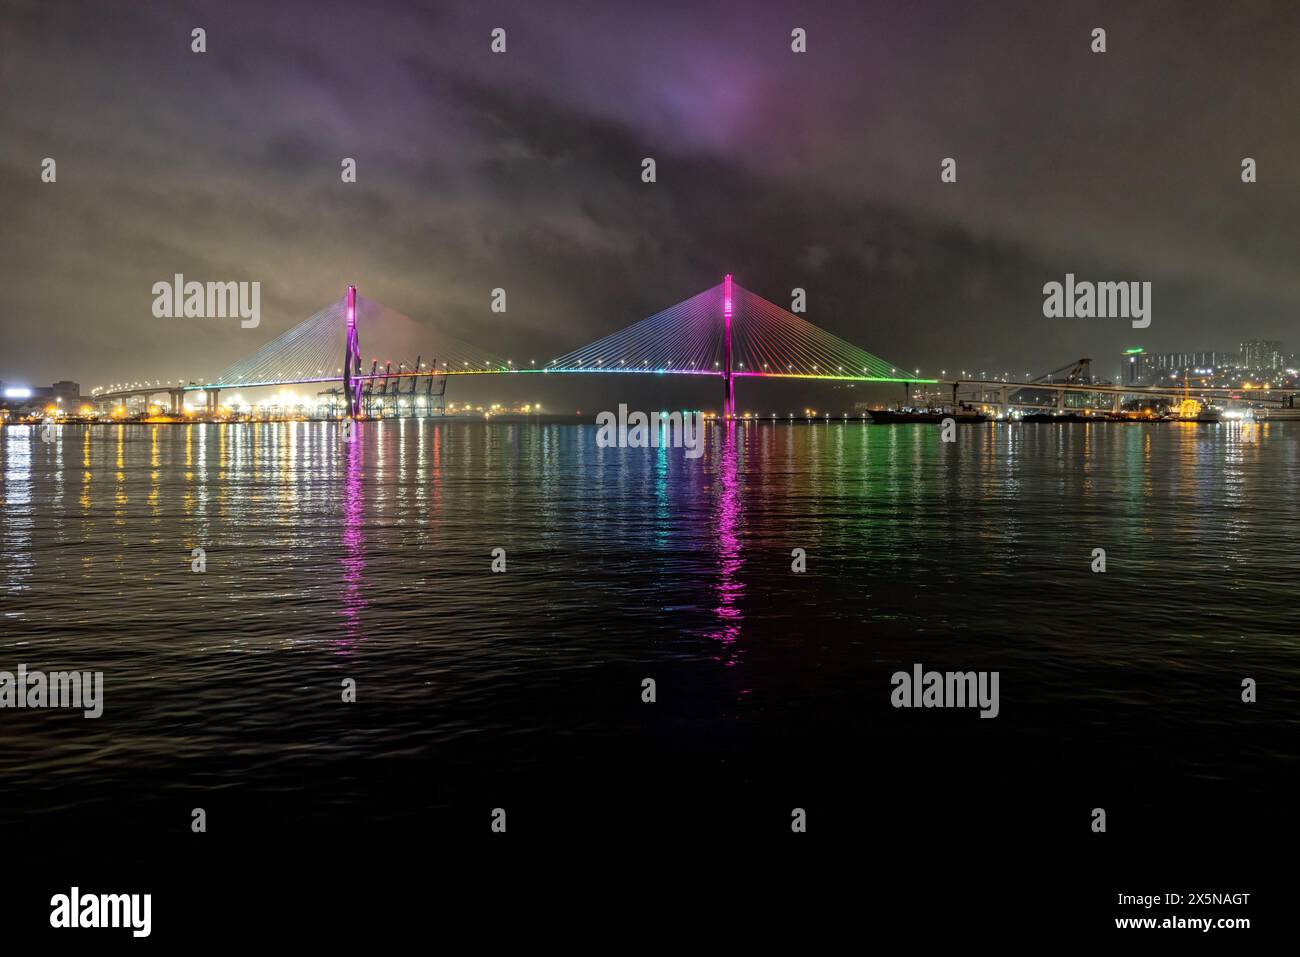 Le pont de Gwangan ou pont de diamant la nuit vu de la plage de Gwangalli, Busan, nuages brillants, couleurs arc-en-ciel, Corée du Sud Banque D'Images